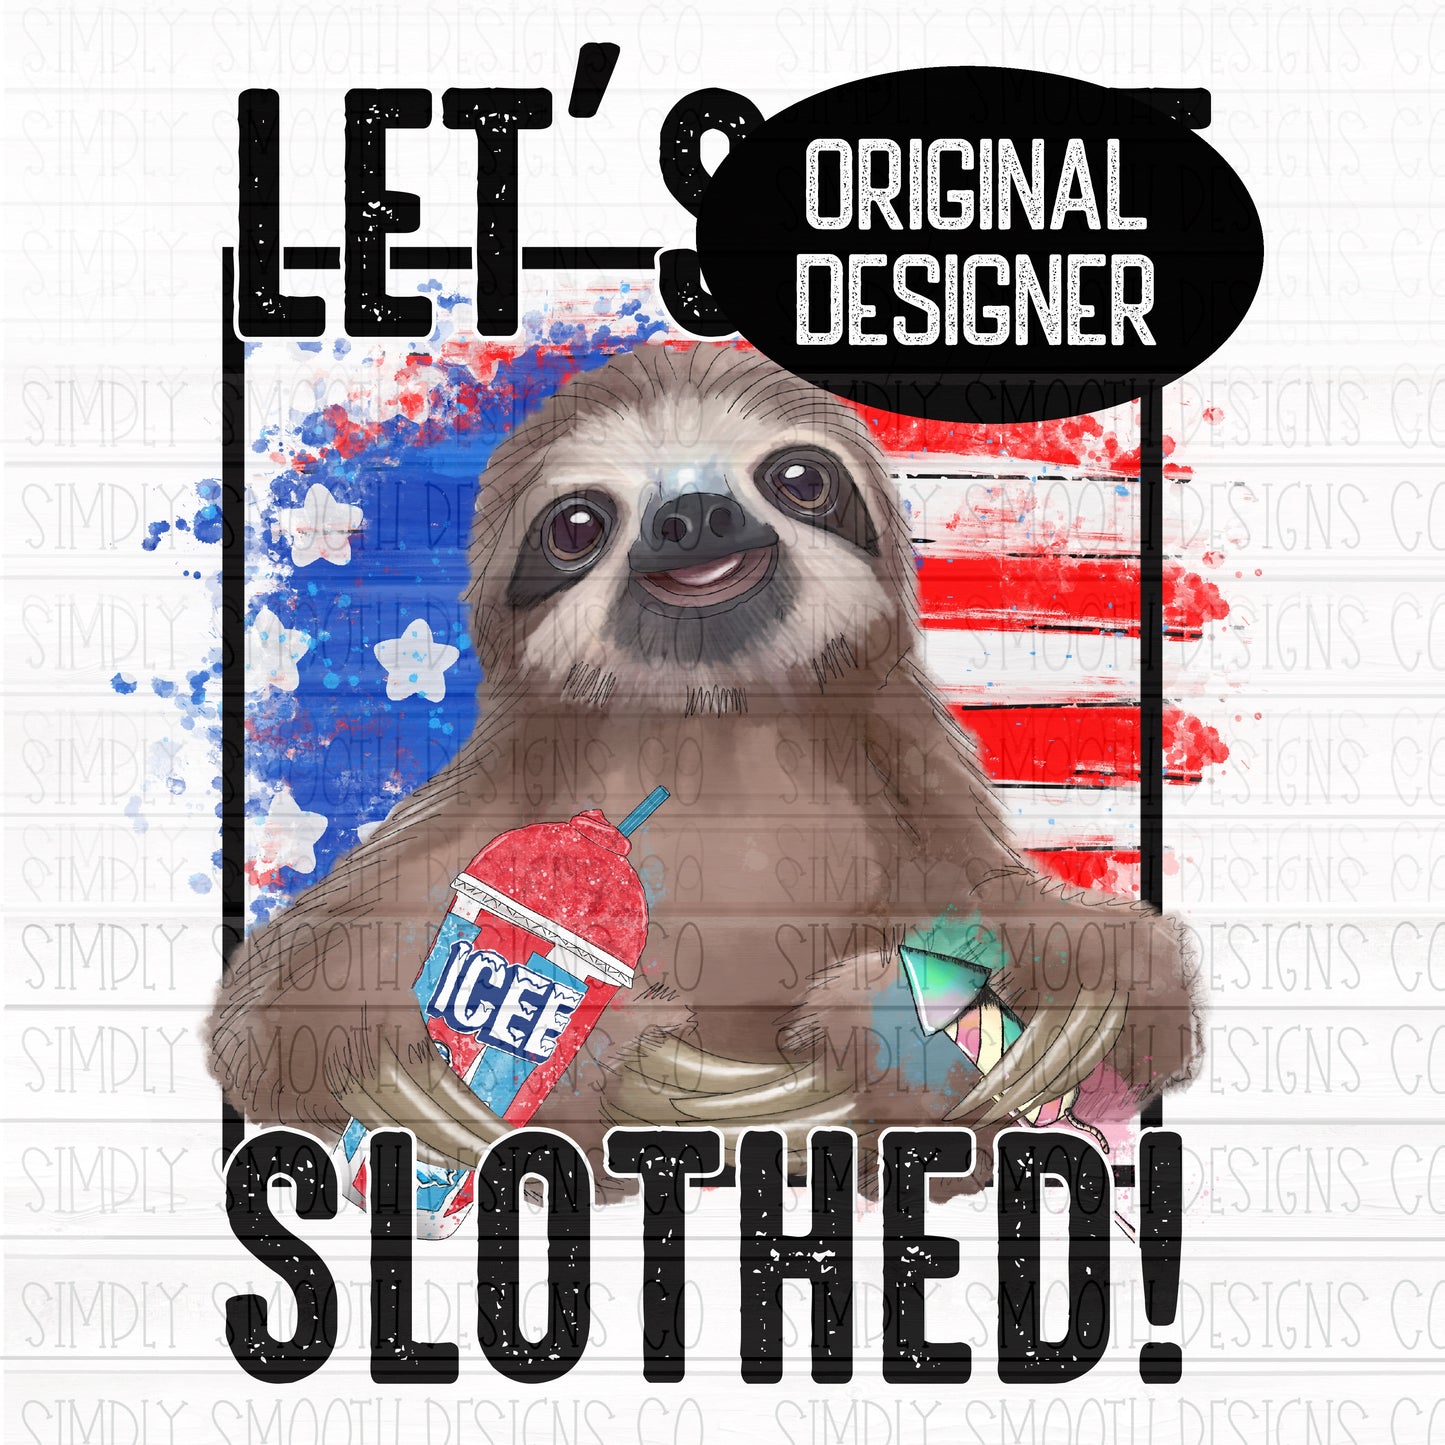 Let’s get slothed